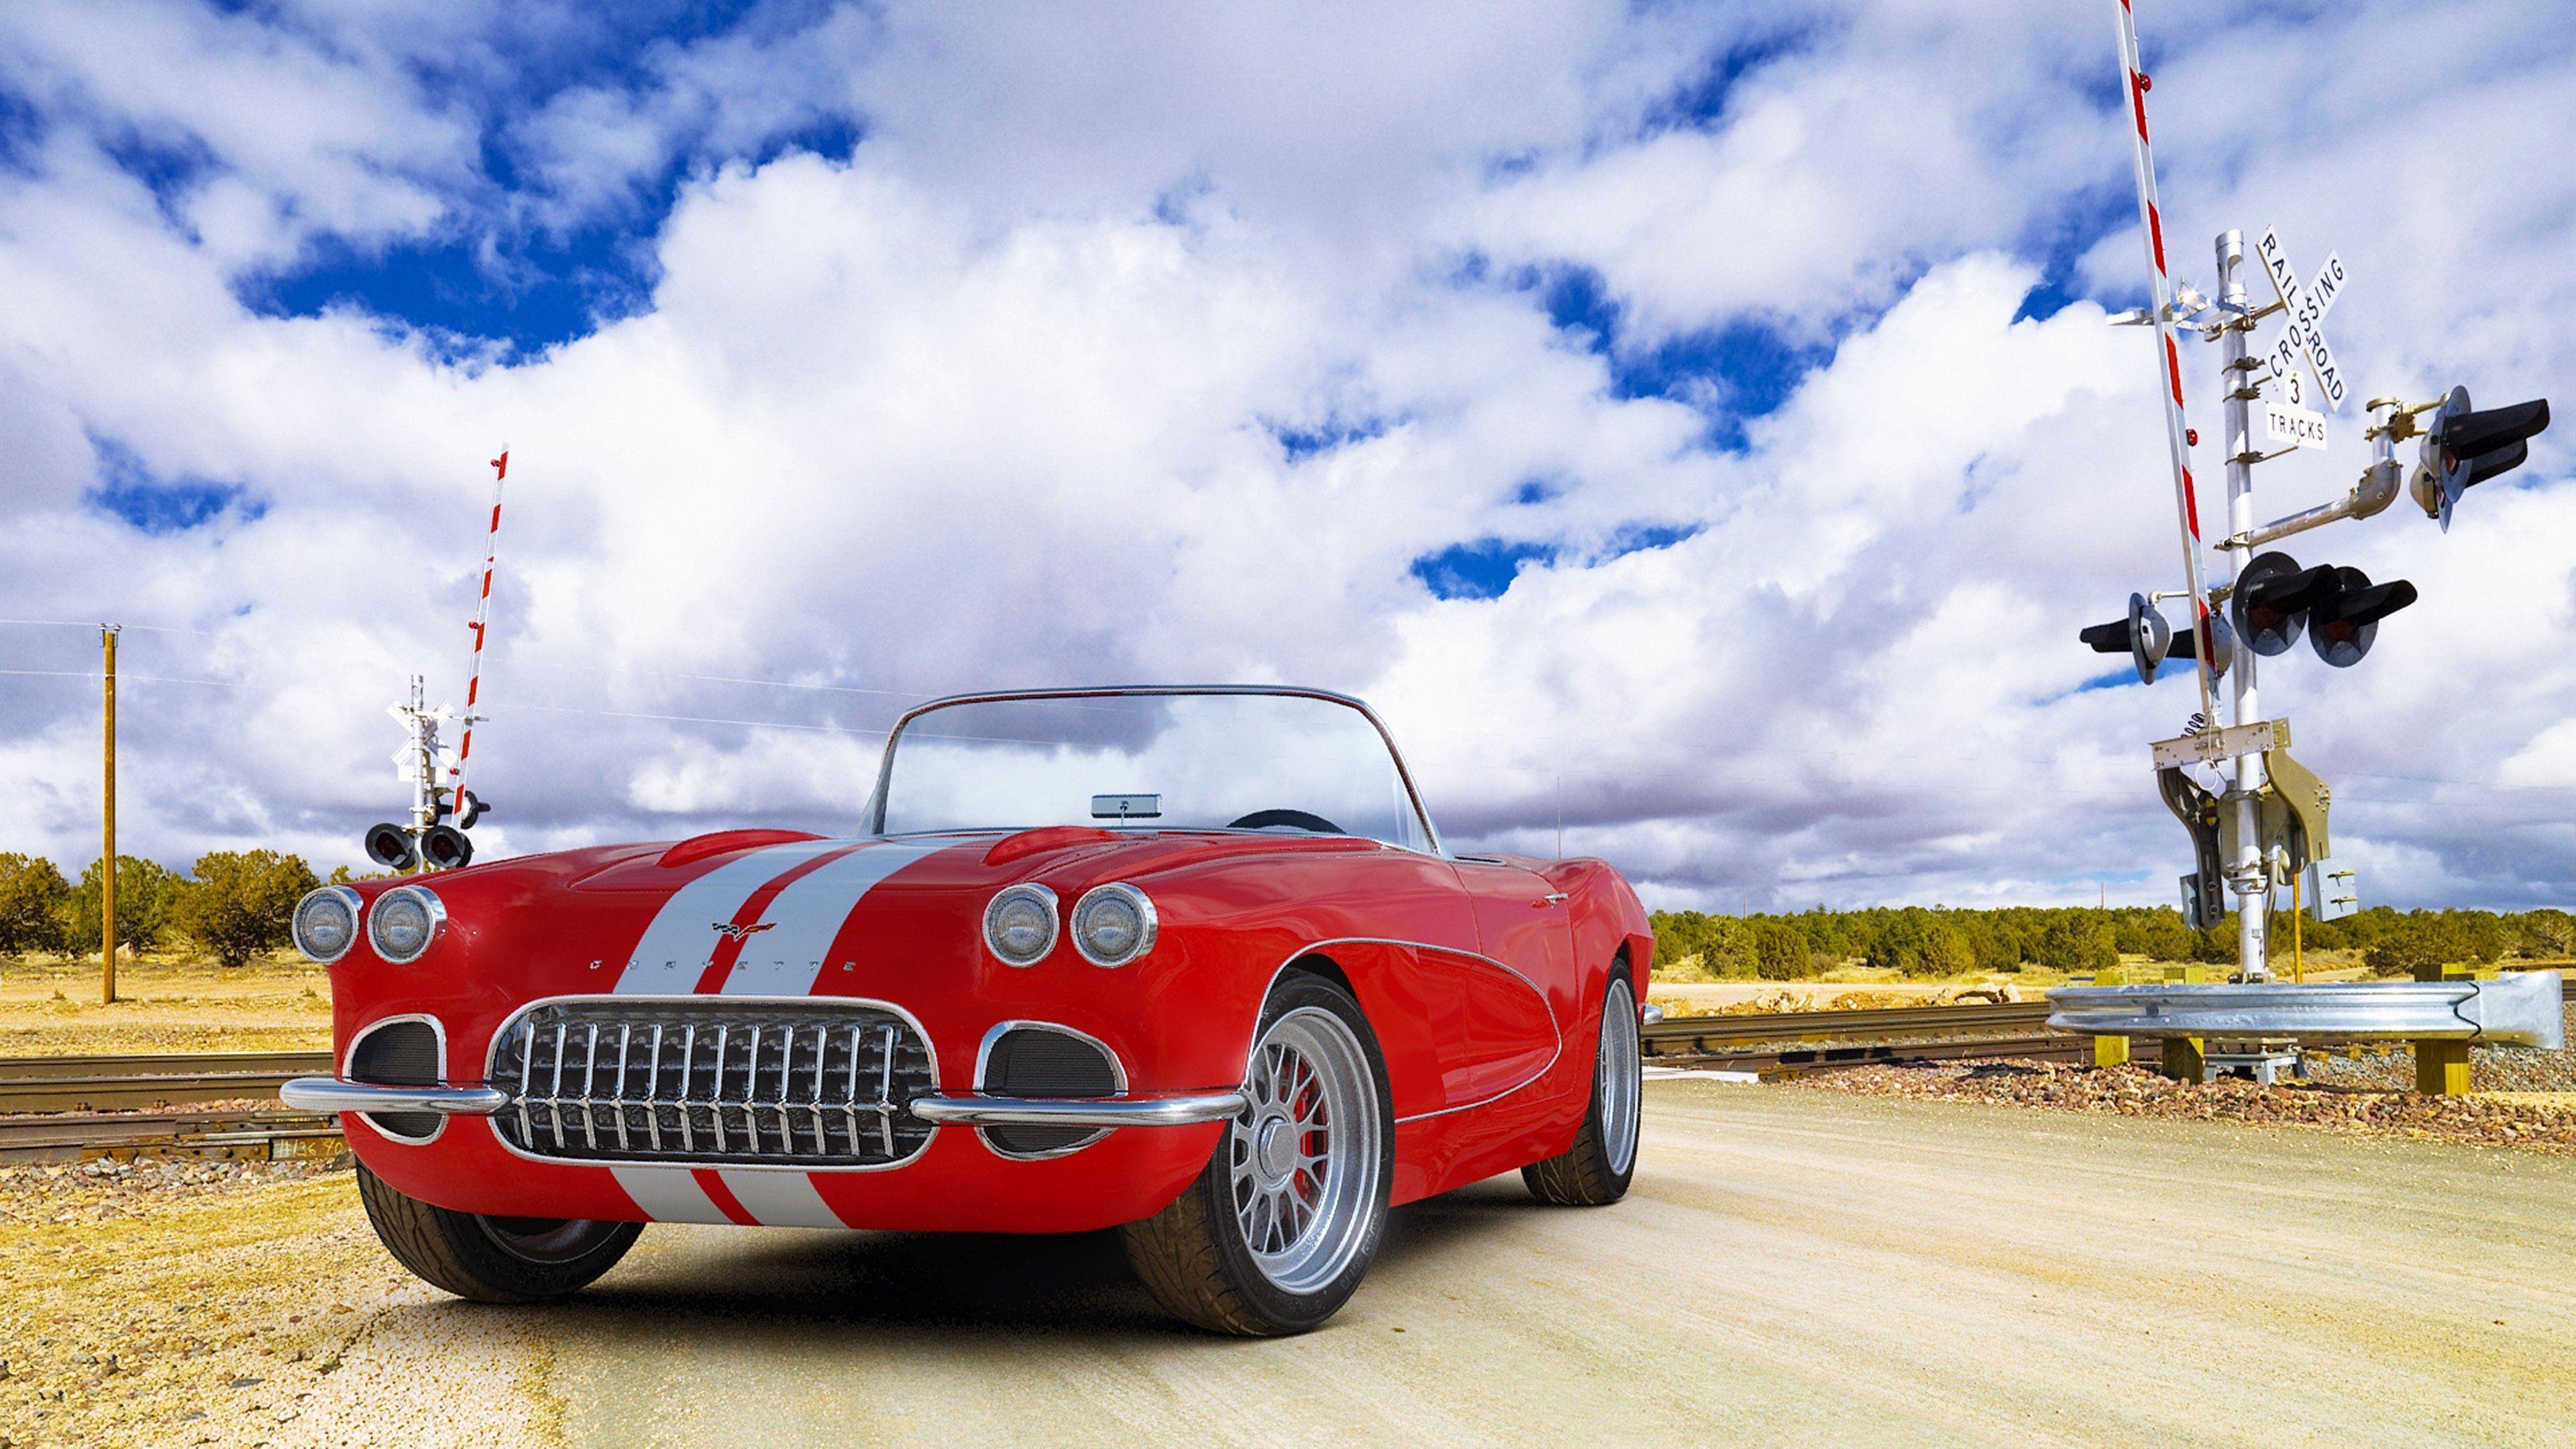 Corvette Classic Cars Wallpapers - Top Những Hình Ảnh Đẹp